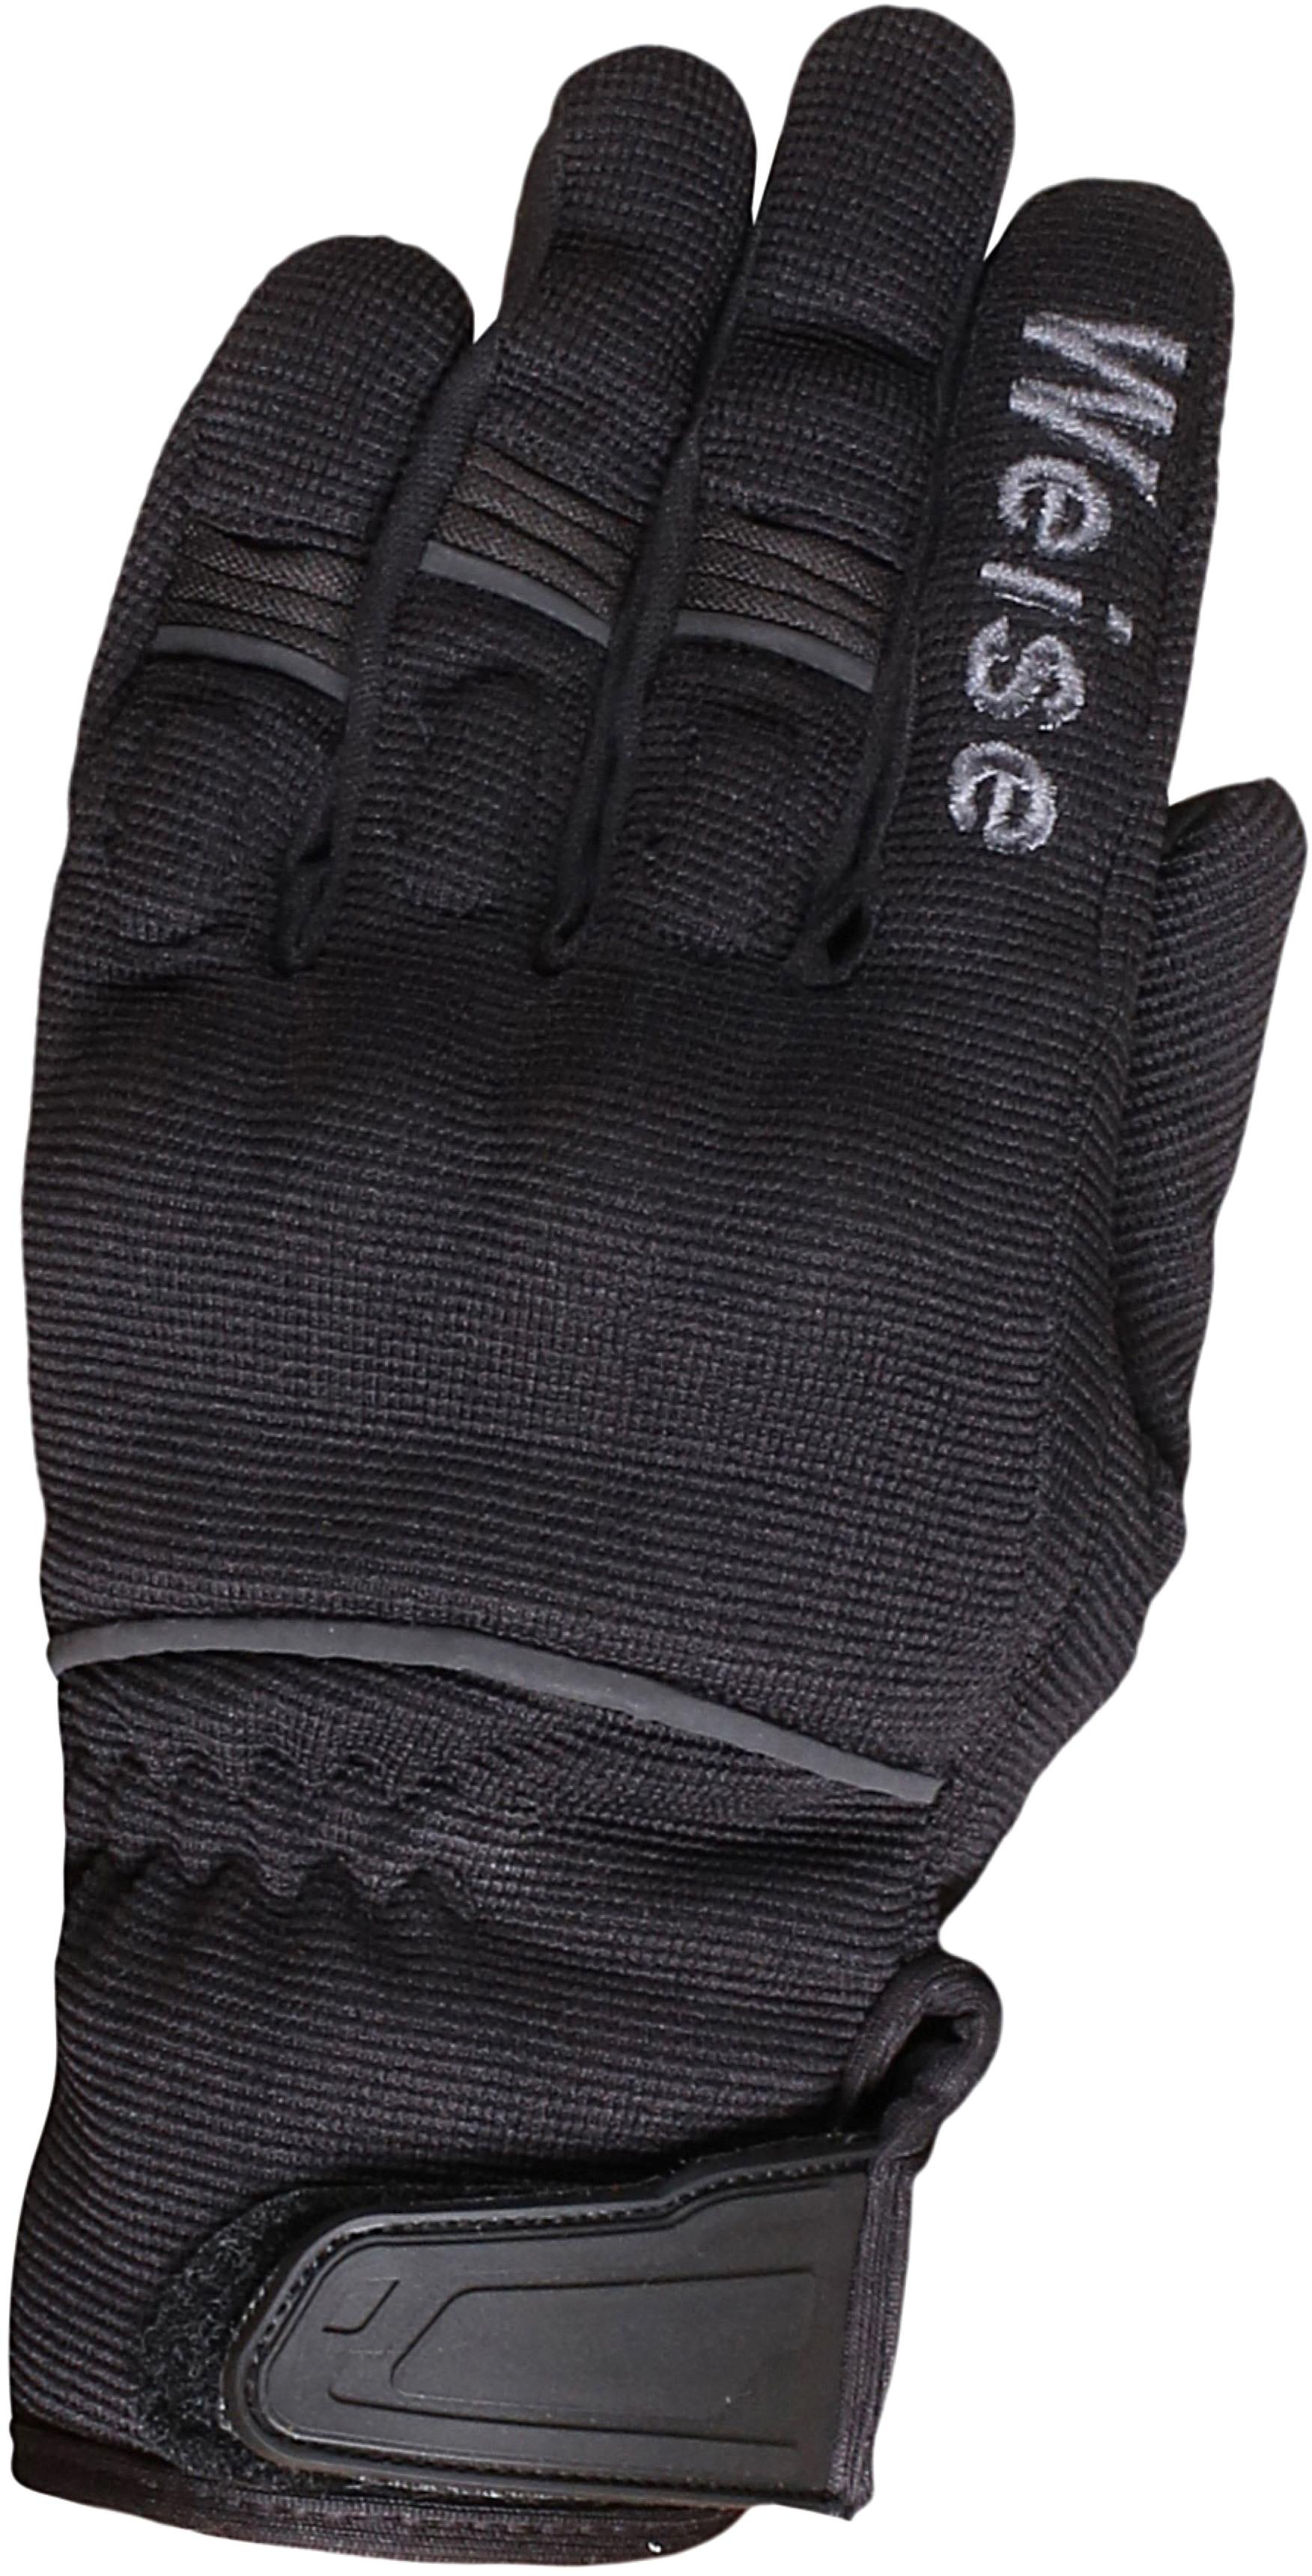 Weise Motorcycle Pit Gloves - Black/Gunmetal, L